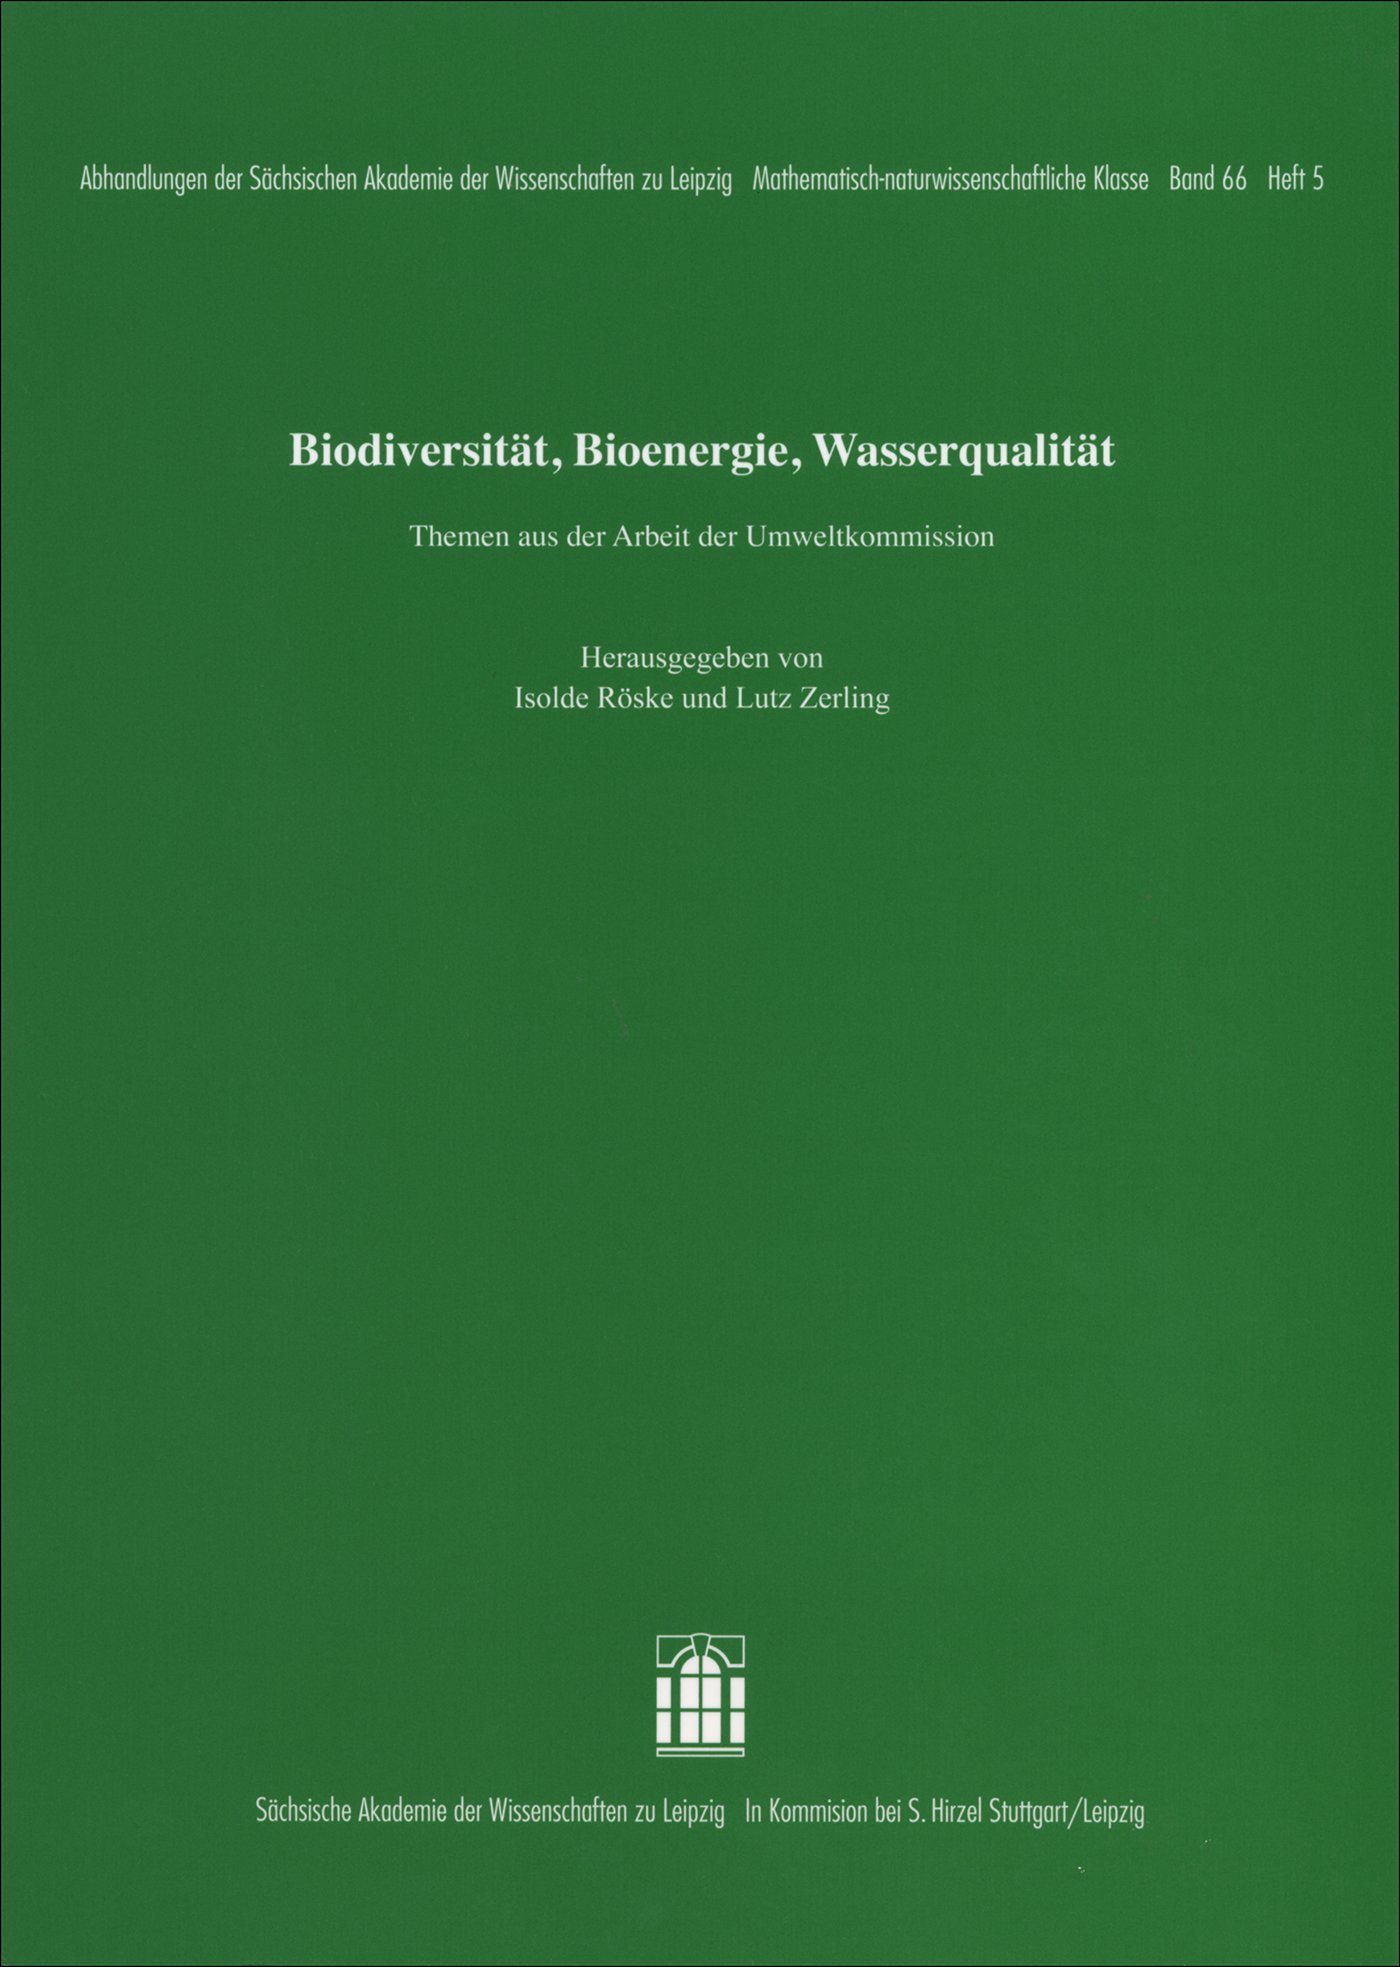 Biodiversität, Bioenergie, Wasserqualität. Themen aus der Arbeit der Umweltkommission